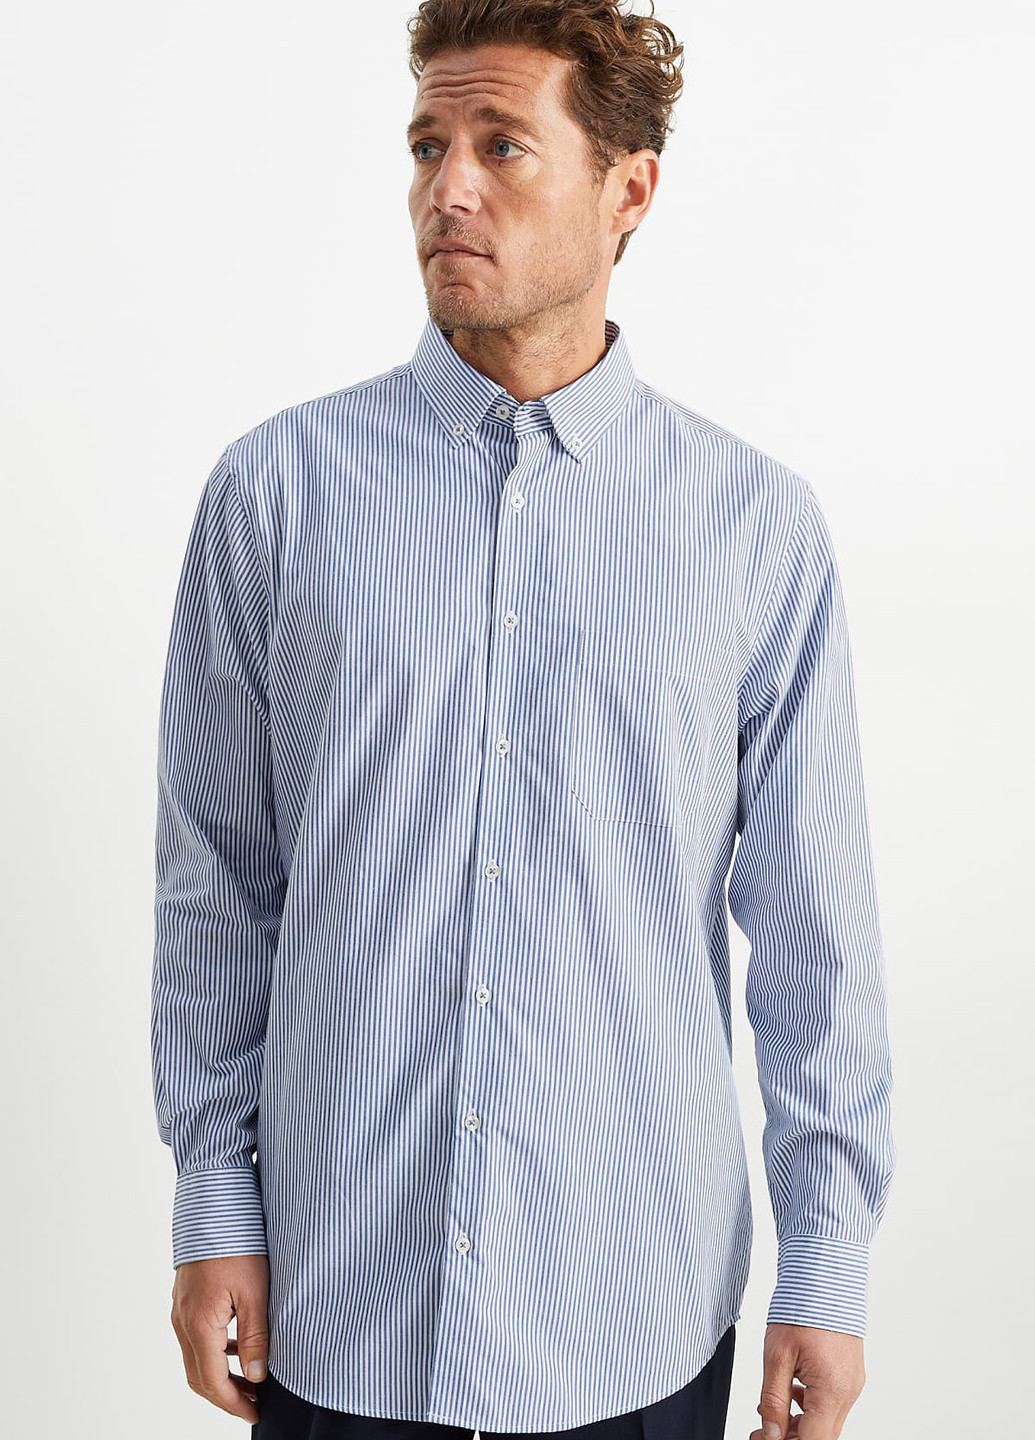 Синий демисезонный комплект (свитер, рубашка) C&A